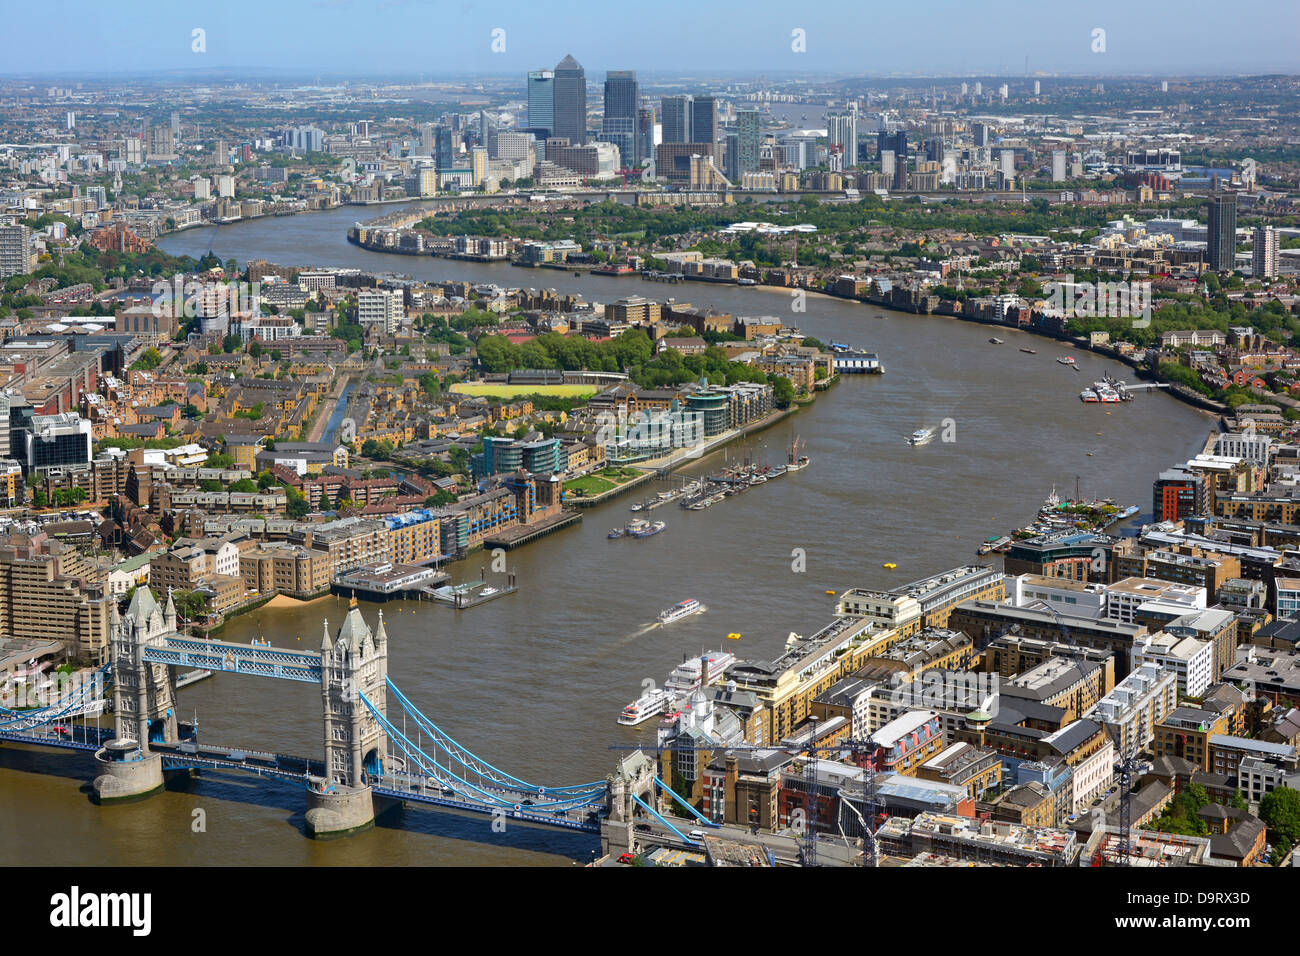 Vista aerea urbana del paesaggio londinese dall'alta marea di Shard Fiume Tamigi dall'iconico Tower Bridge verso lo skyline di Canary Wharf Landmarks Inghilterra Regno Unito Foto Stock